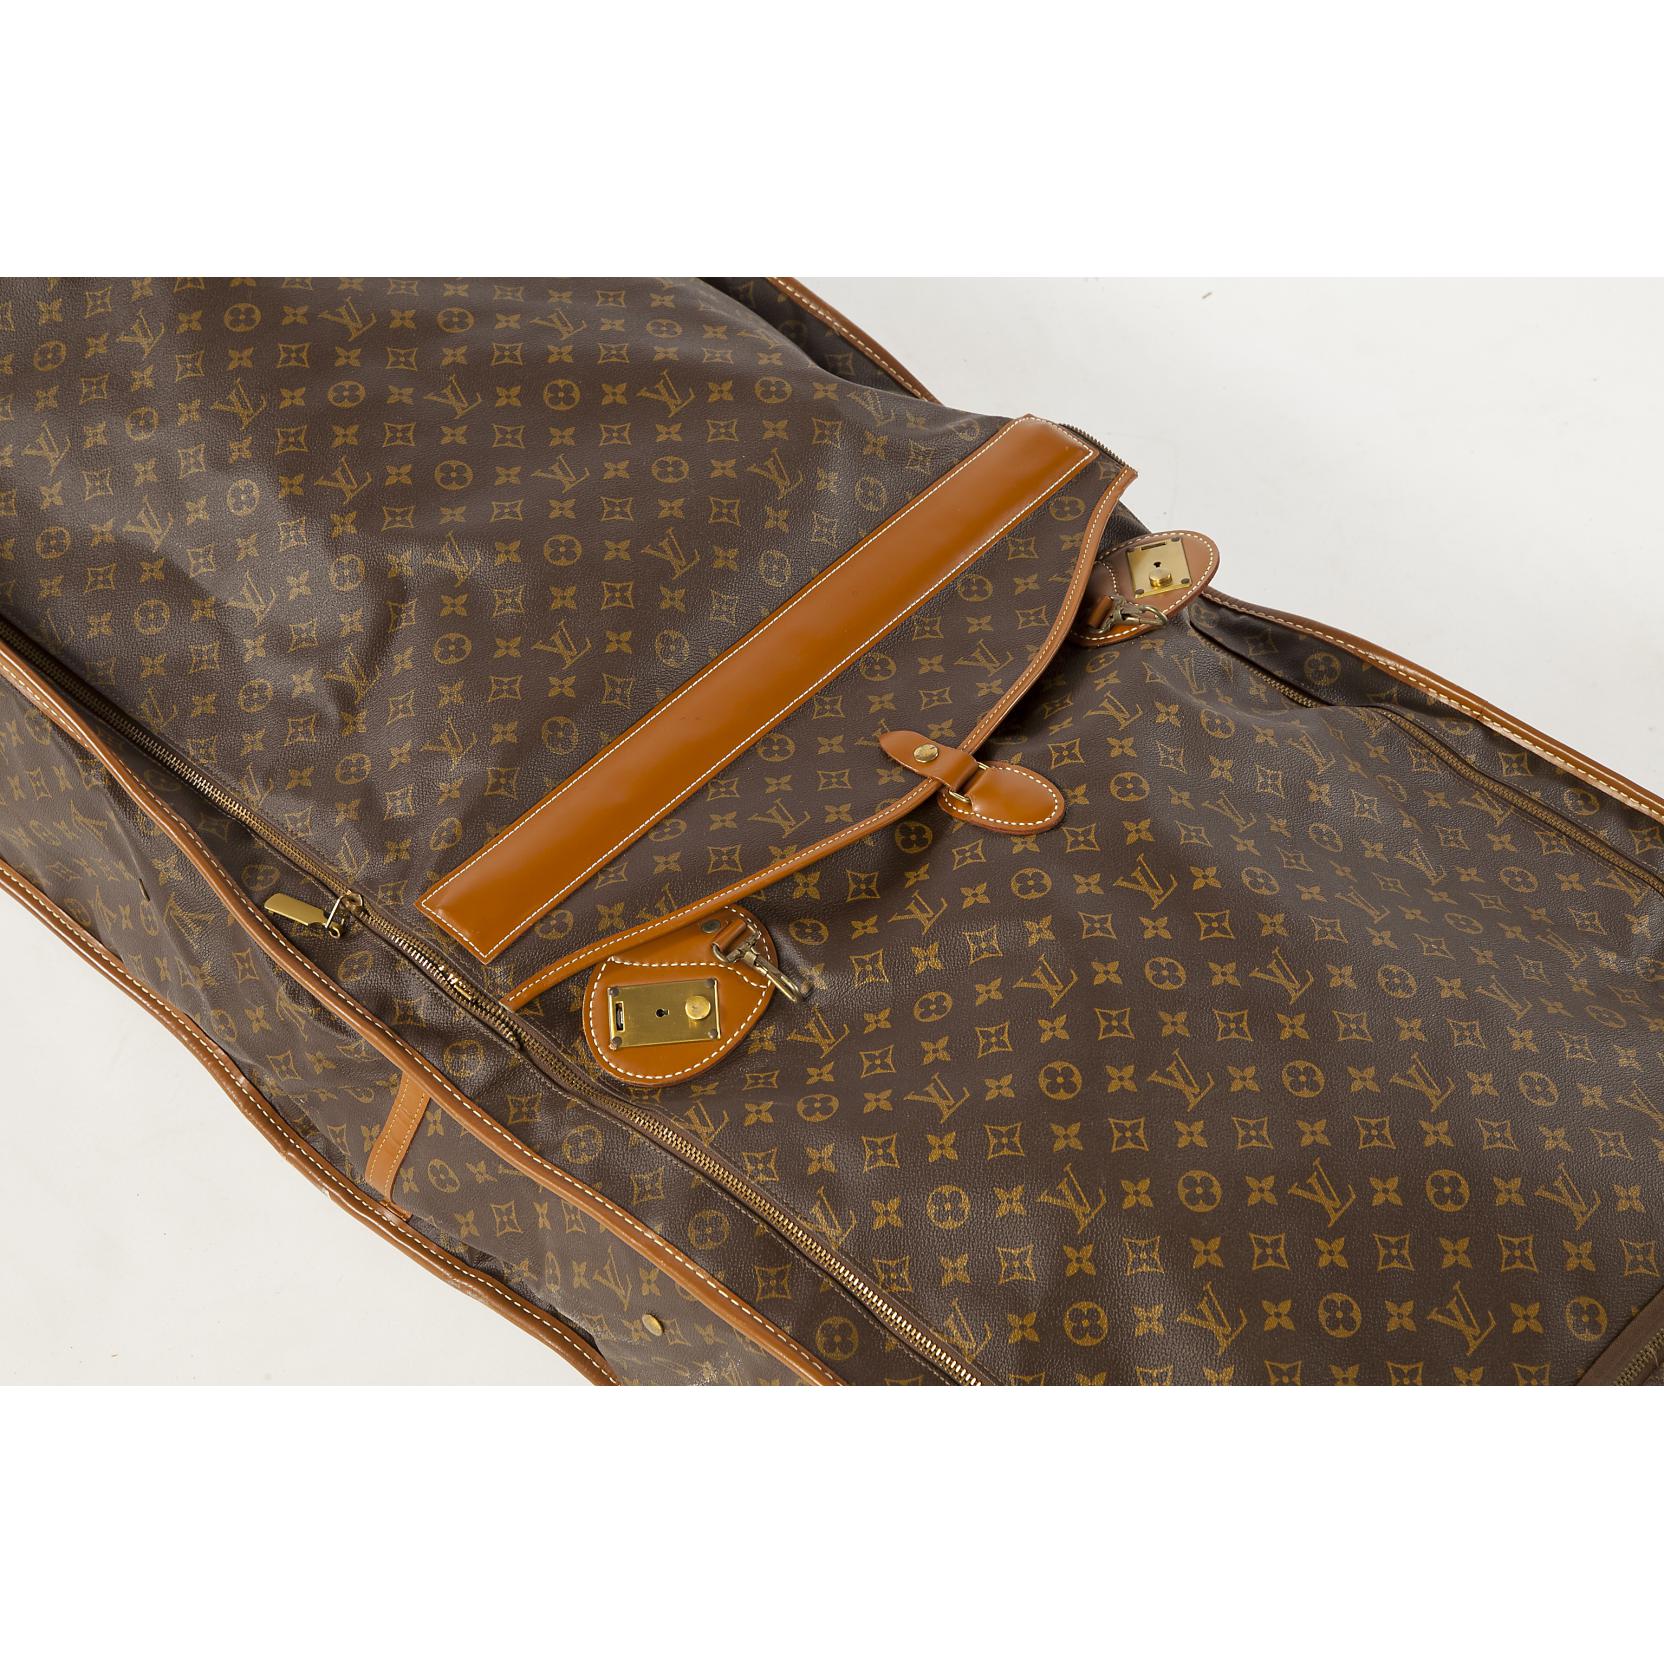 Sold at Auction: Vintage Louis Vuitton Monogram Leather Garment Bag